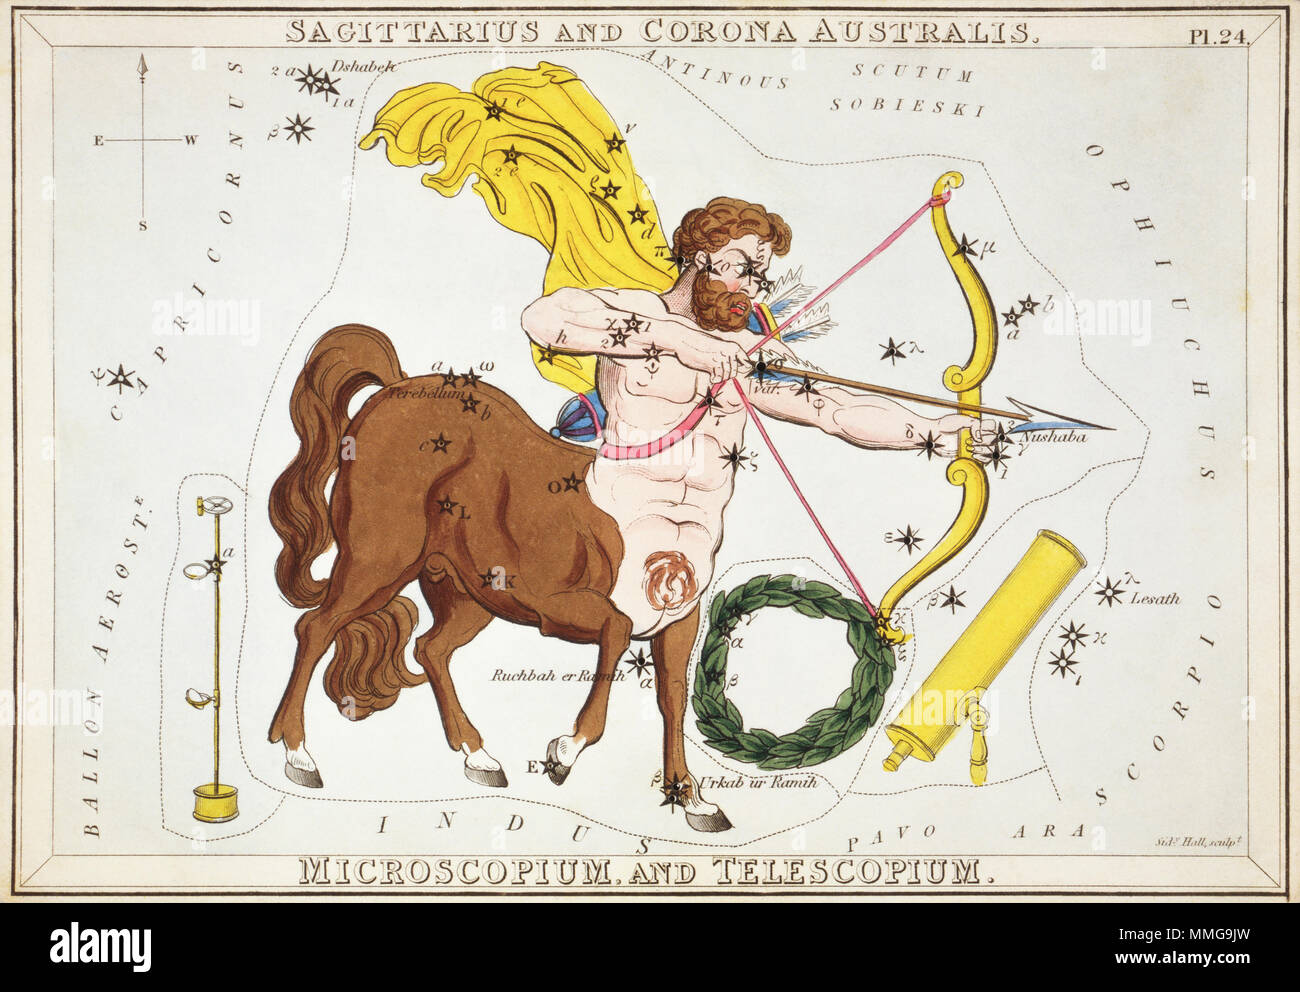 Schütze und Corona Australis, Microscopium, und Telescopium. Karte Nummer 24 von Urania's Mirror, oder einen Blick auf den Himmel, eines der 32 astronomischen Star Chart Karten von Sidney Hall graviert und publshed 1824. Stockfoto